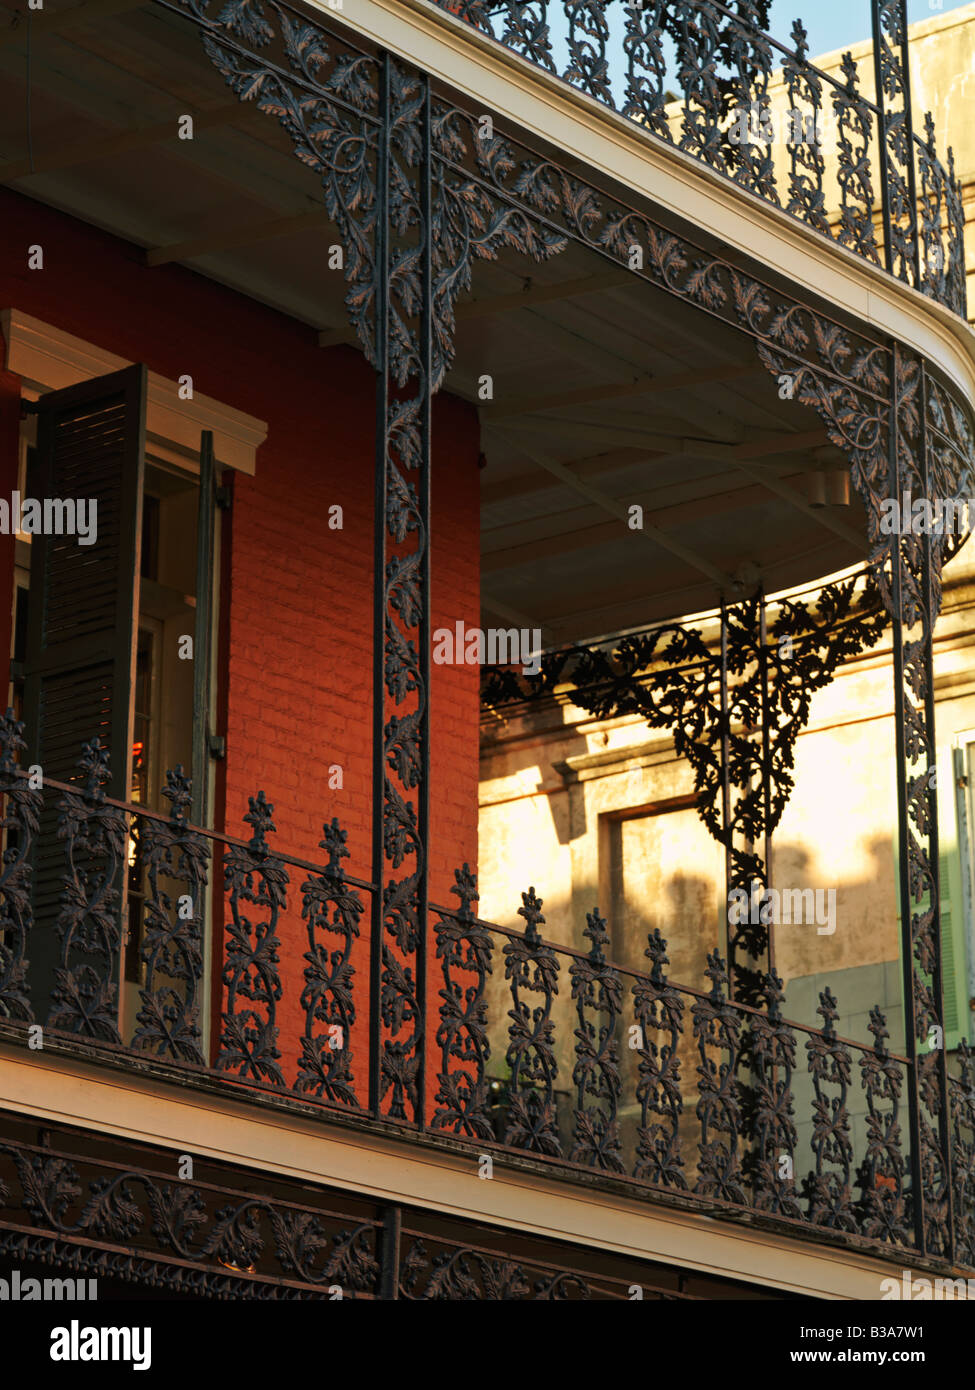 USA, Louisiana, New Orleans, French Quarter, French Quarter Gebäude mit schmiedeeisernen Balkonen Stockfoto